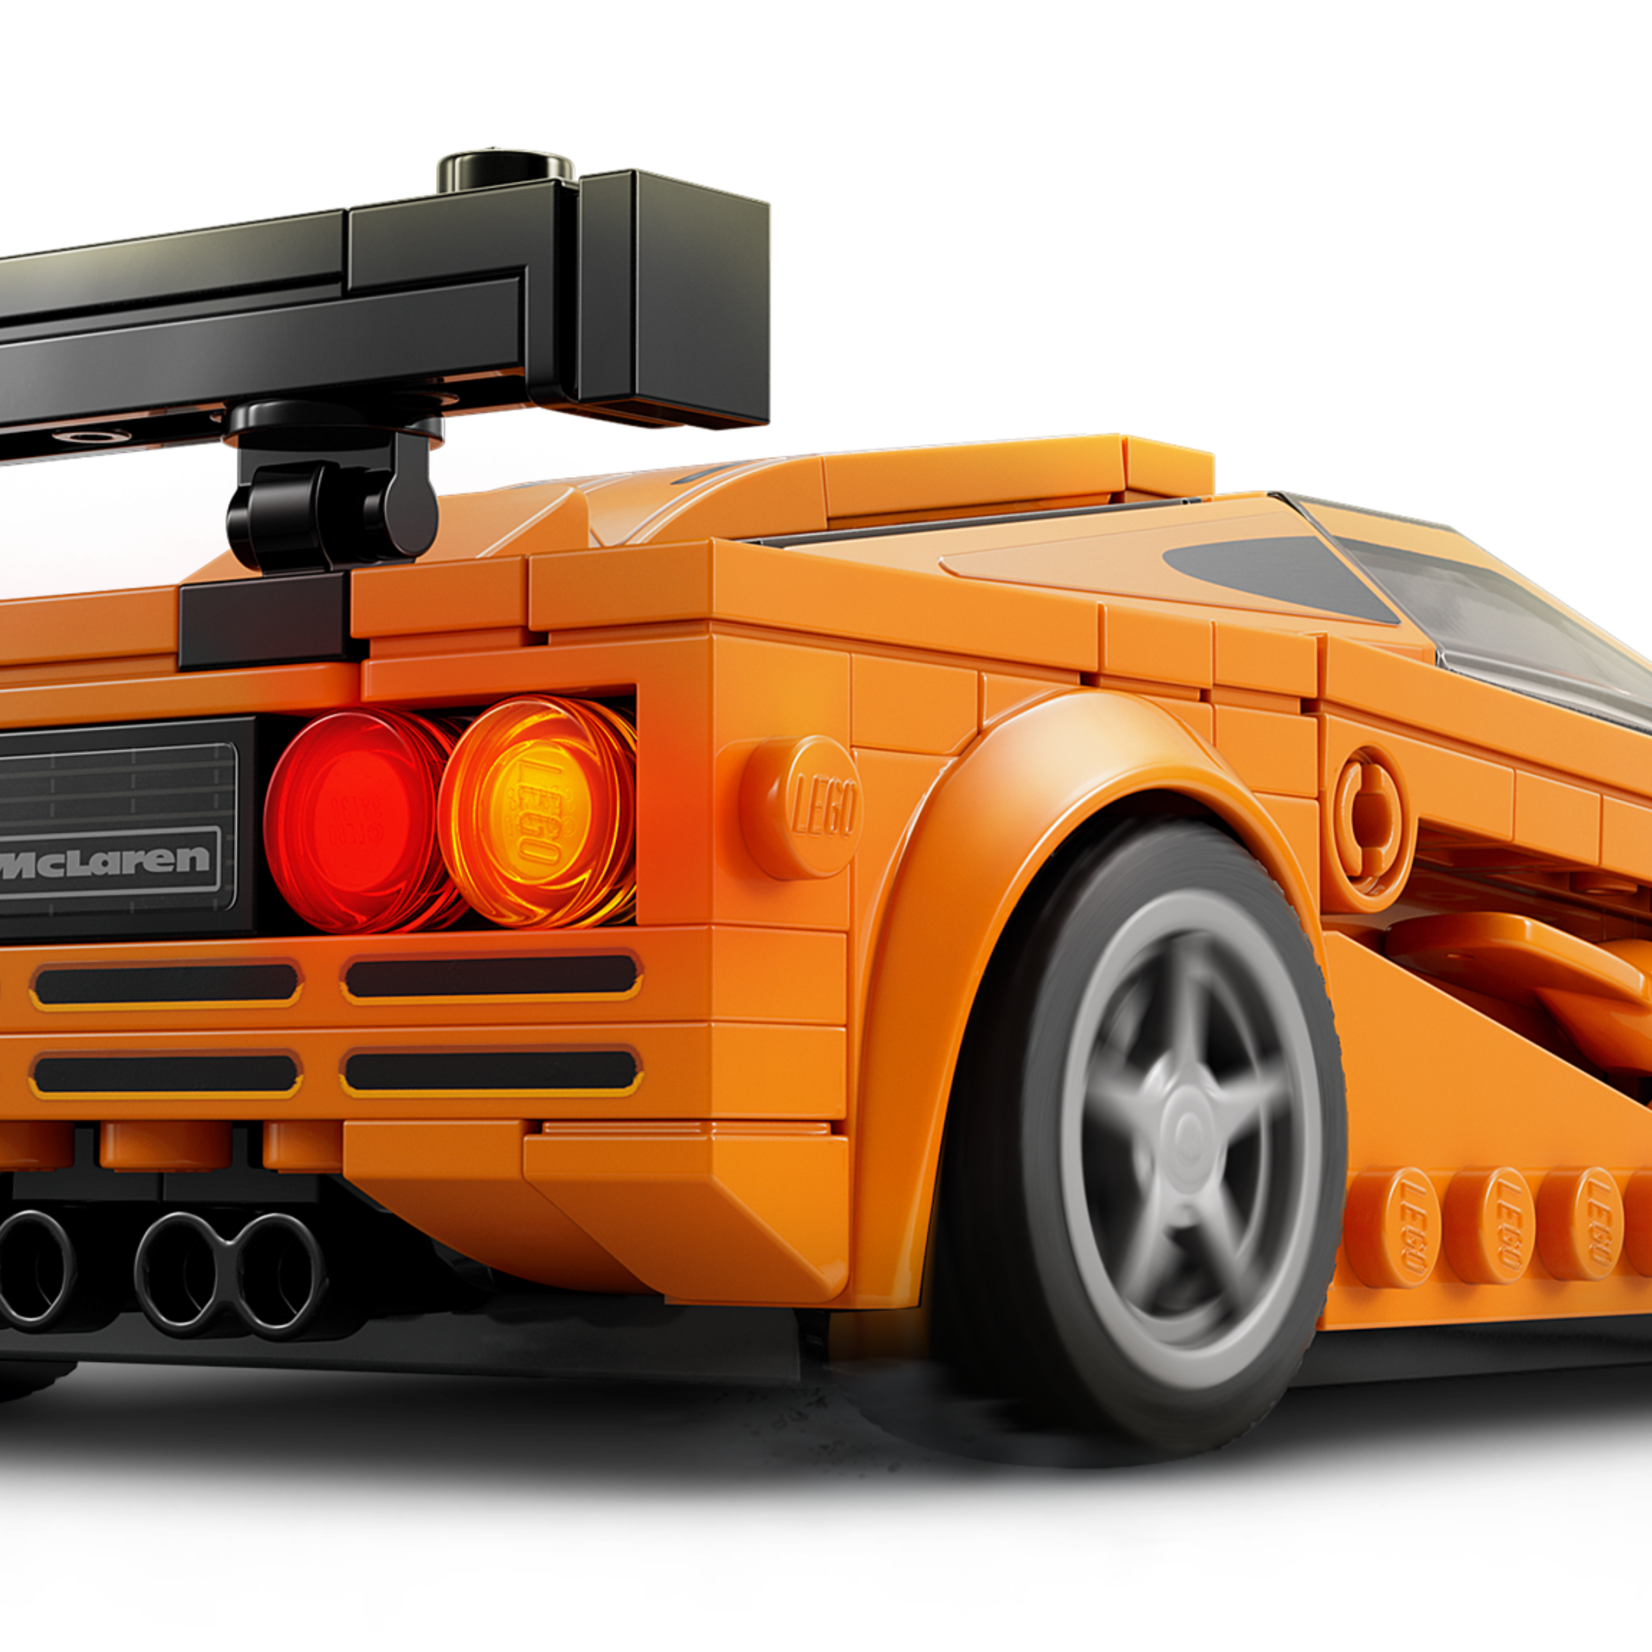 Lego Lego 76918 Speed Champions - McLaren Solus GT et McLaren F1 LM